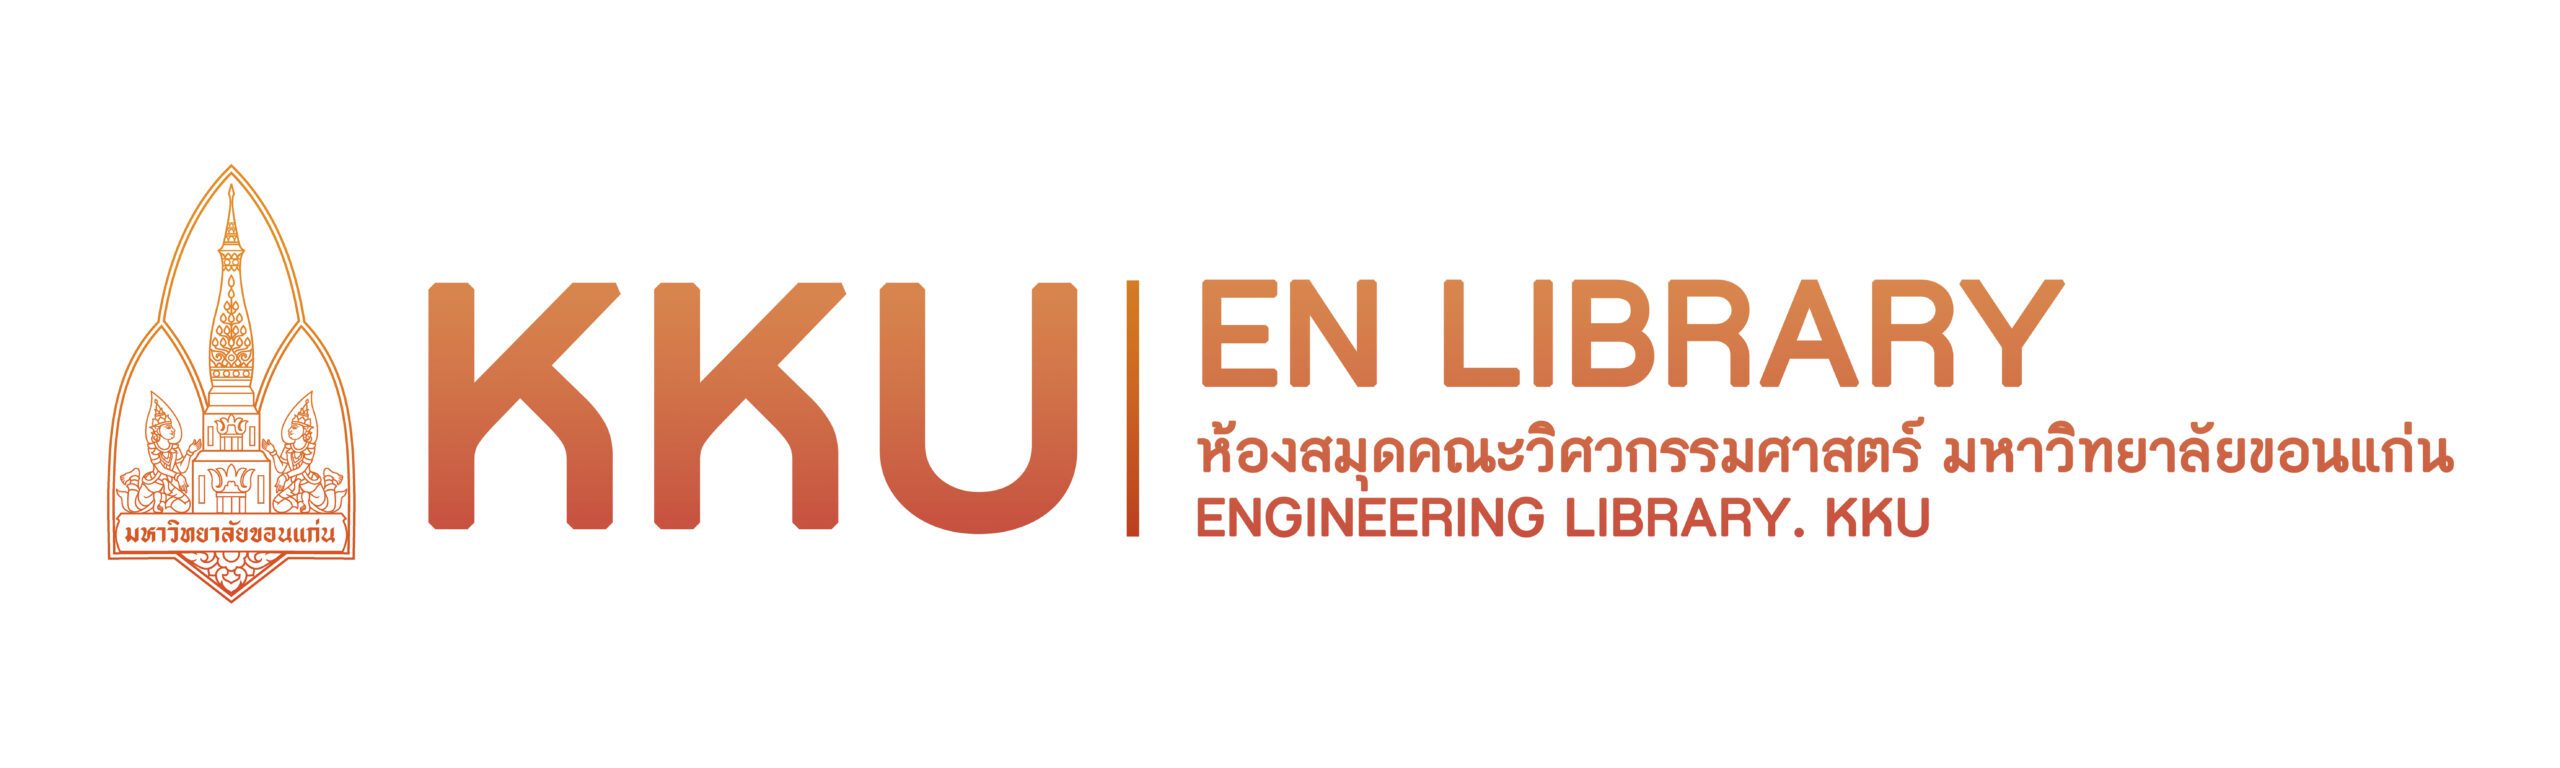 ENLIB_logo